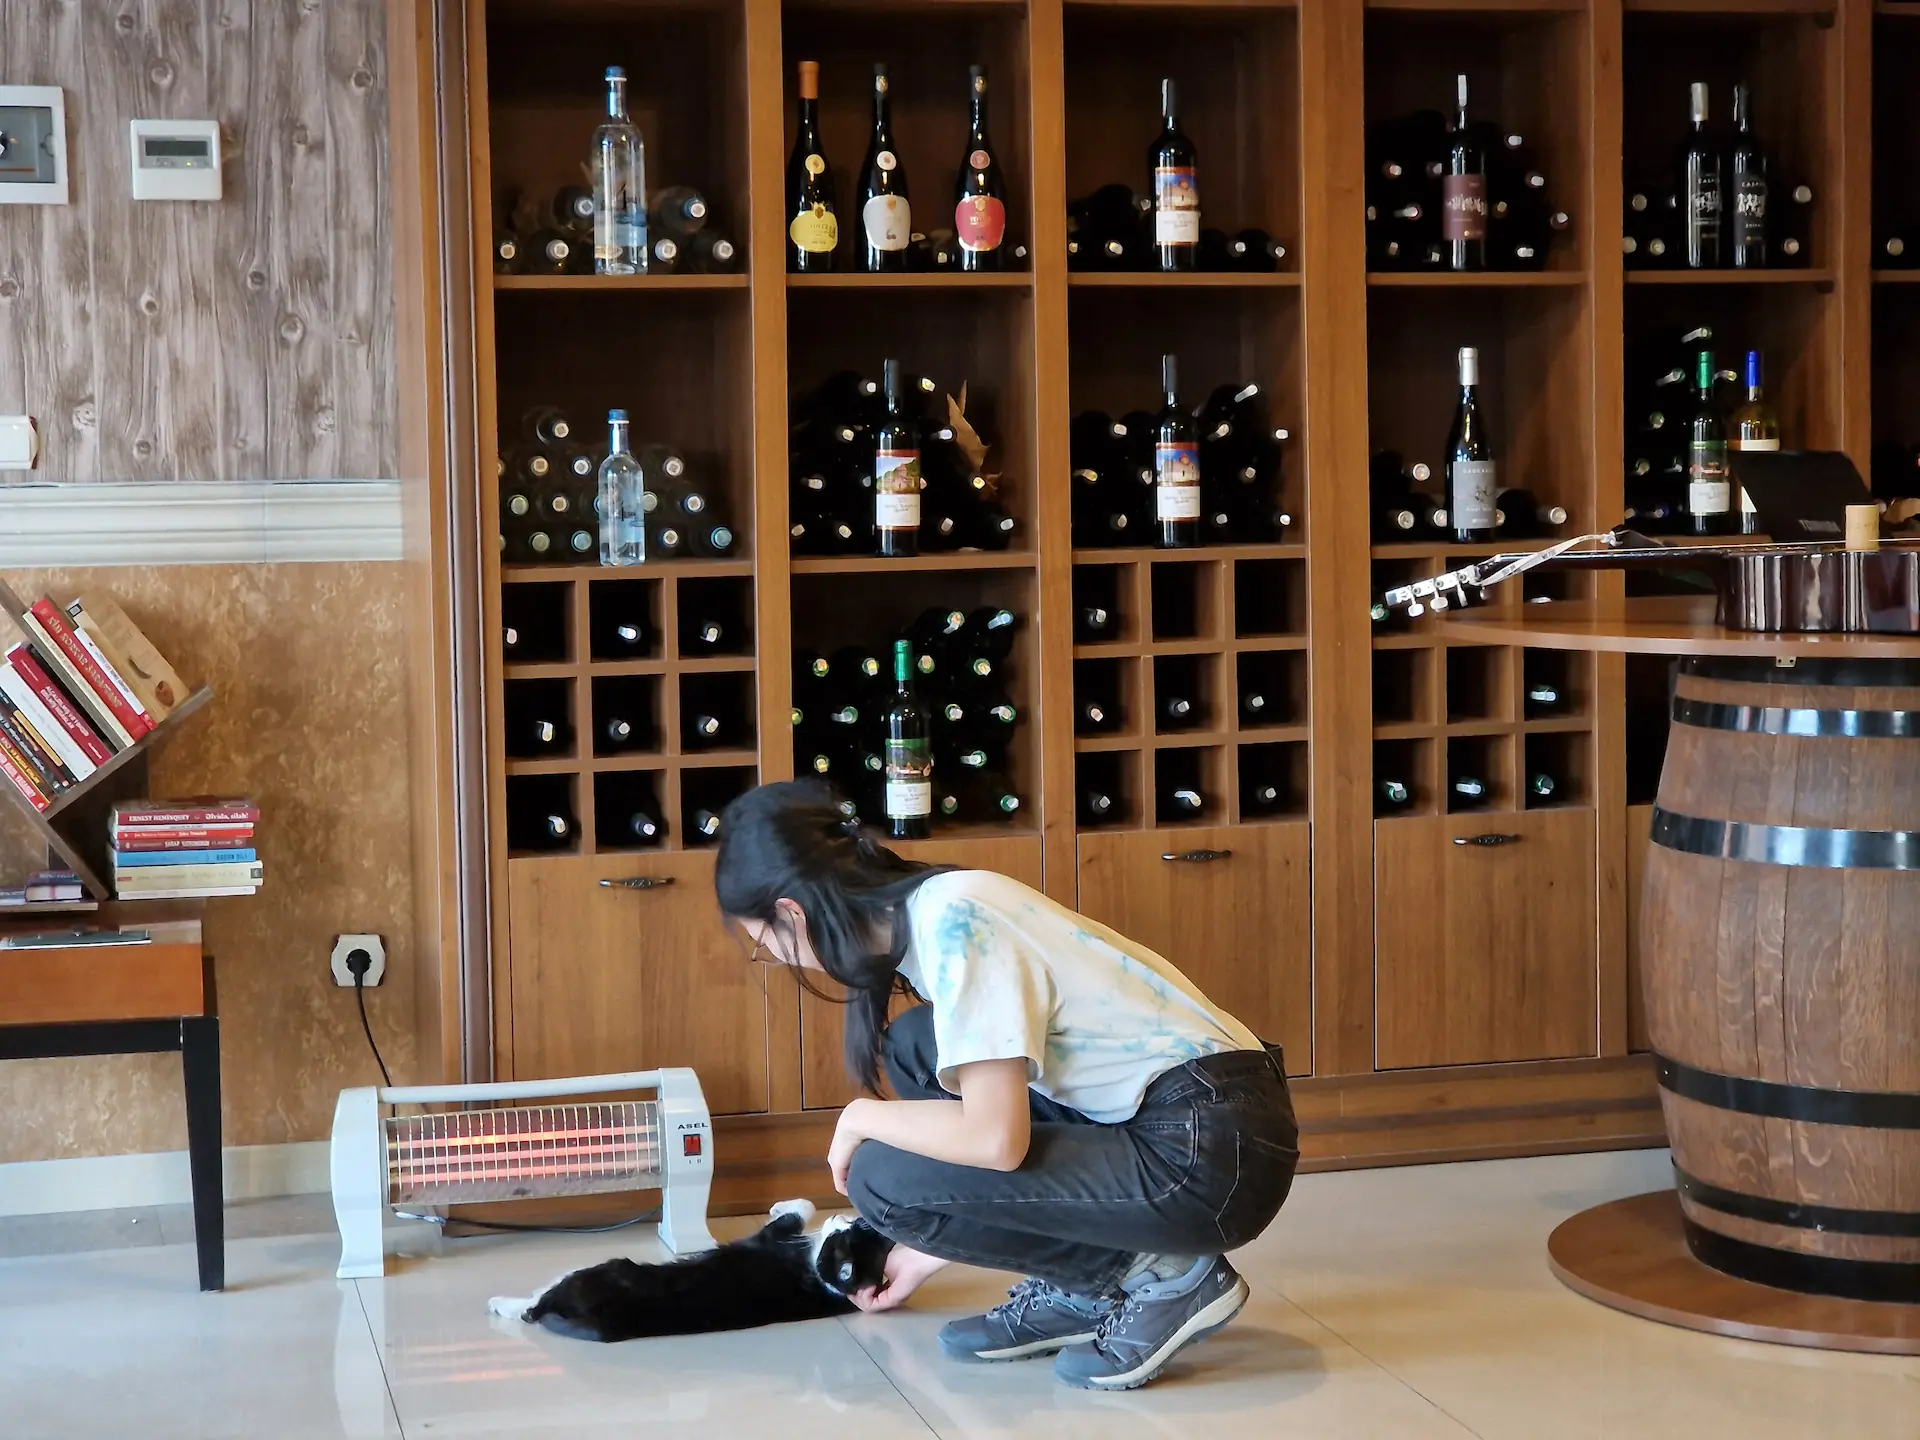 Clara fait des câlins au chat de la maison qui s'est couché juste devant le chauffage portable. Des étagères de vin sont en fond.